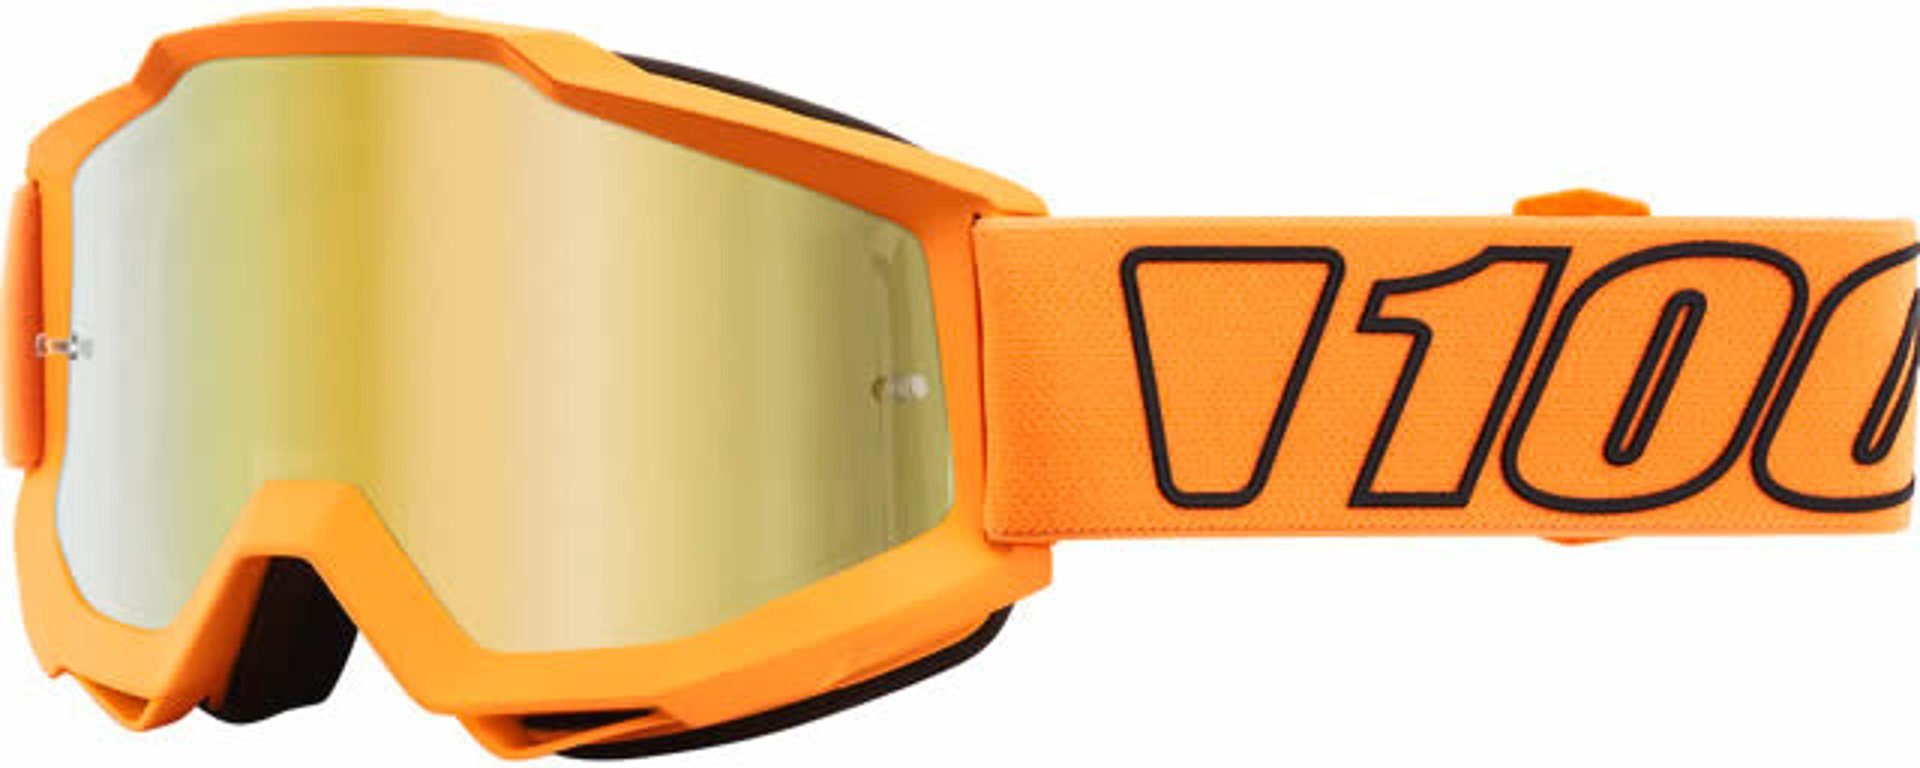 Extra 100% Brille Luminari Accuri Motocross Motorradbrille